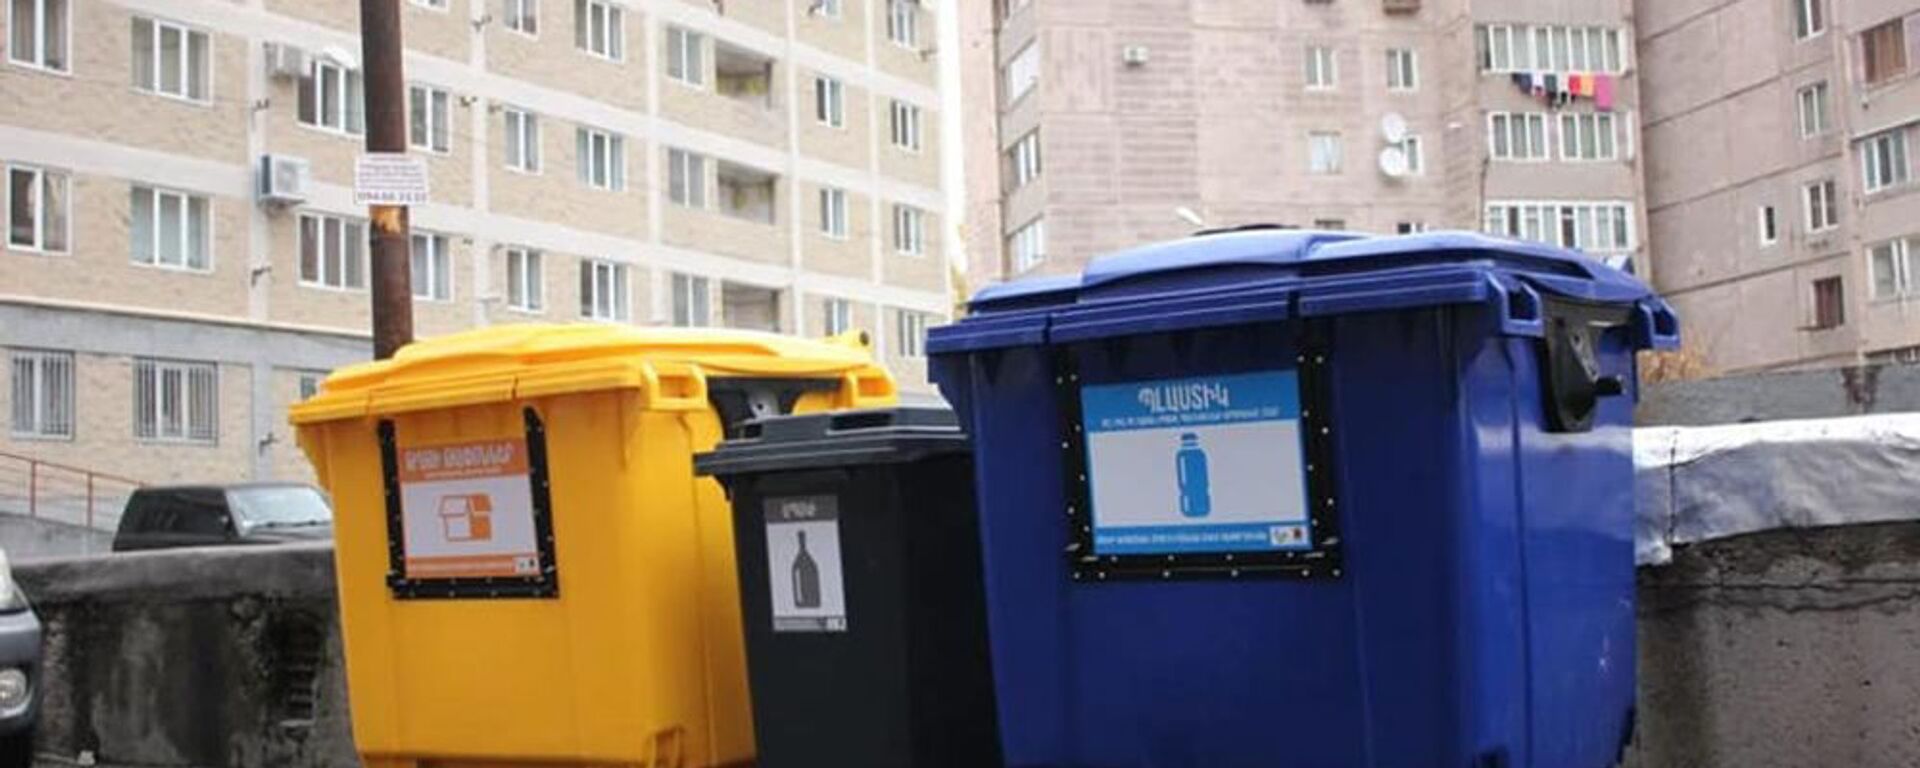 В Ереване устанавливают сортировочные контейнеры для мусора - Sputnik Армения, 1920, 24.06.2021